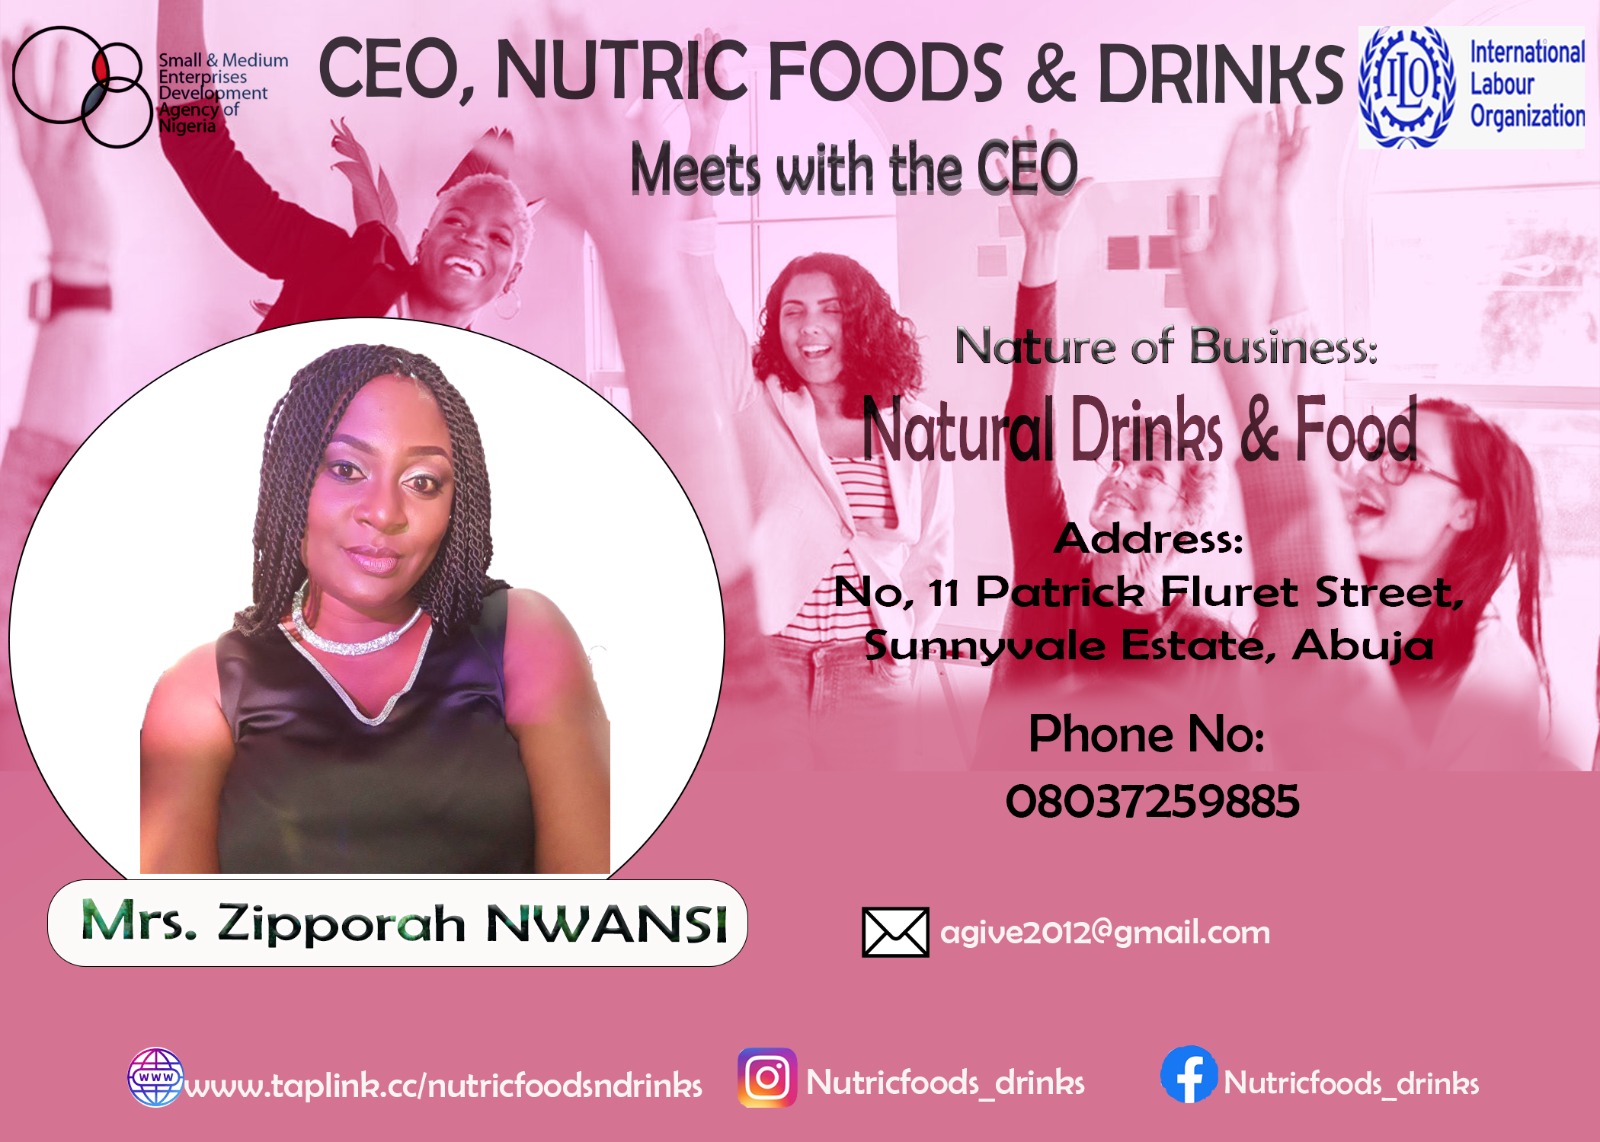 NUTRIC FOODS & DRINKS